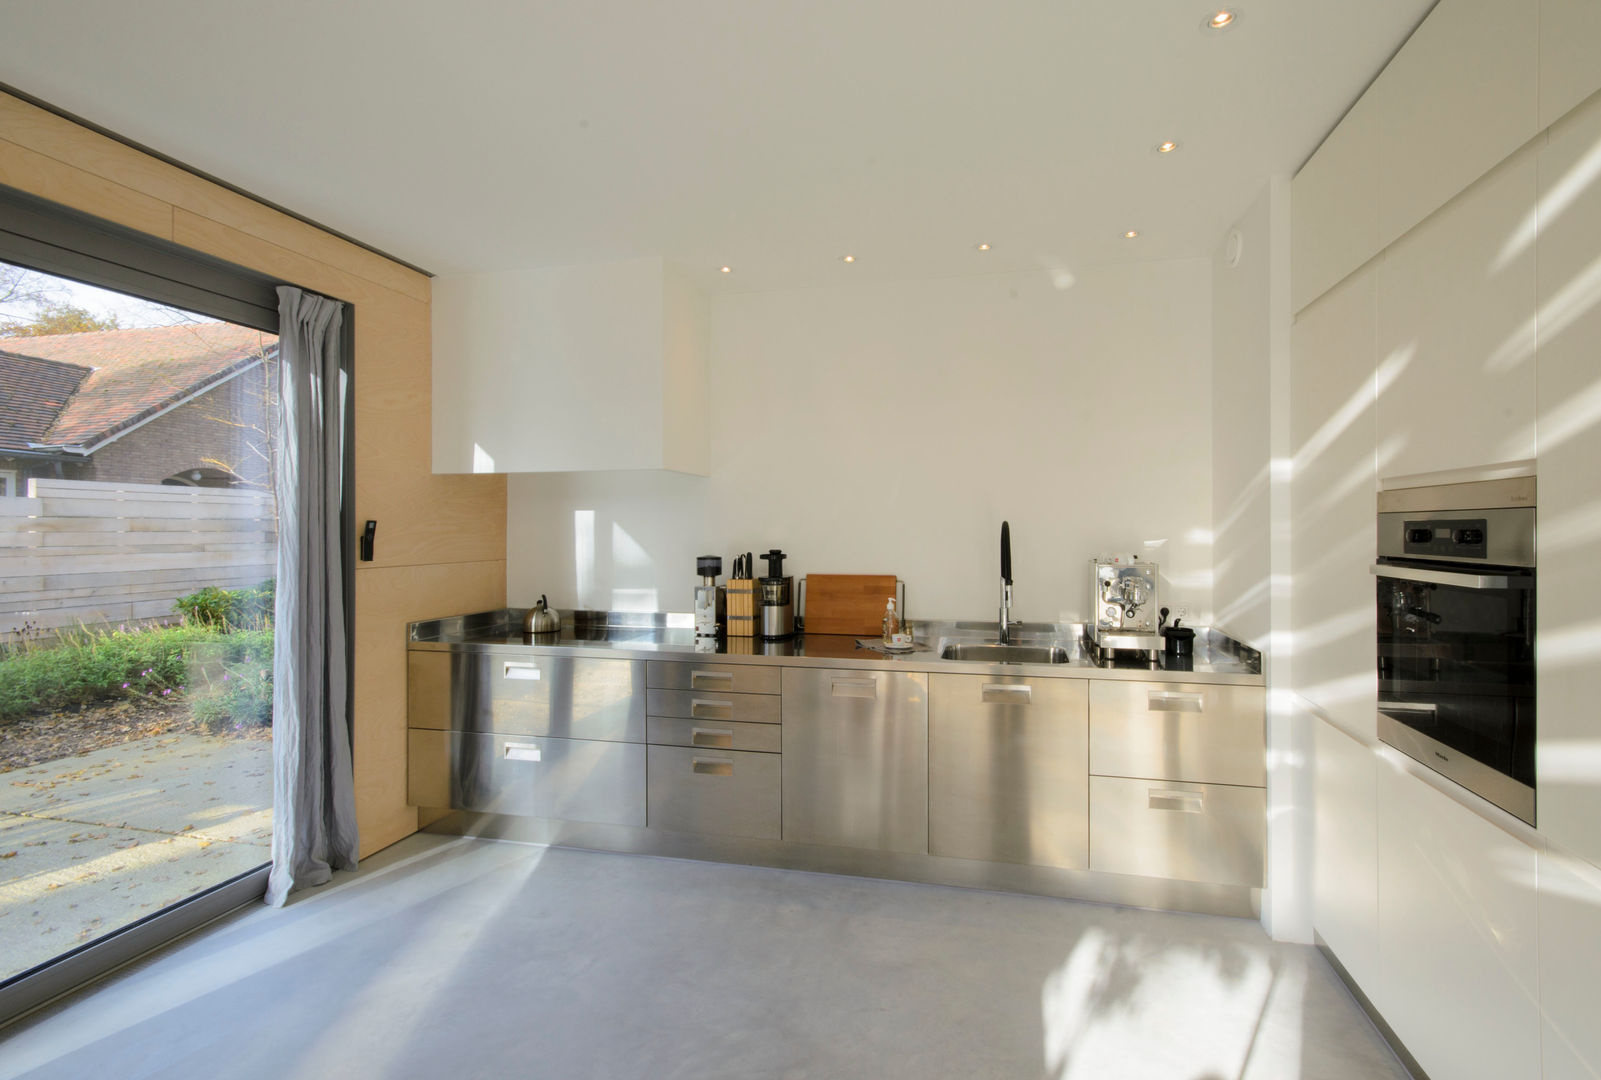 Lofthome Bergen (NH), Blok Kats van Veen Architecten Blok Kats van Veen Architecten Modern kitchen